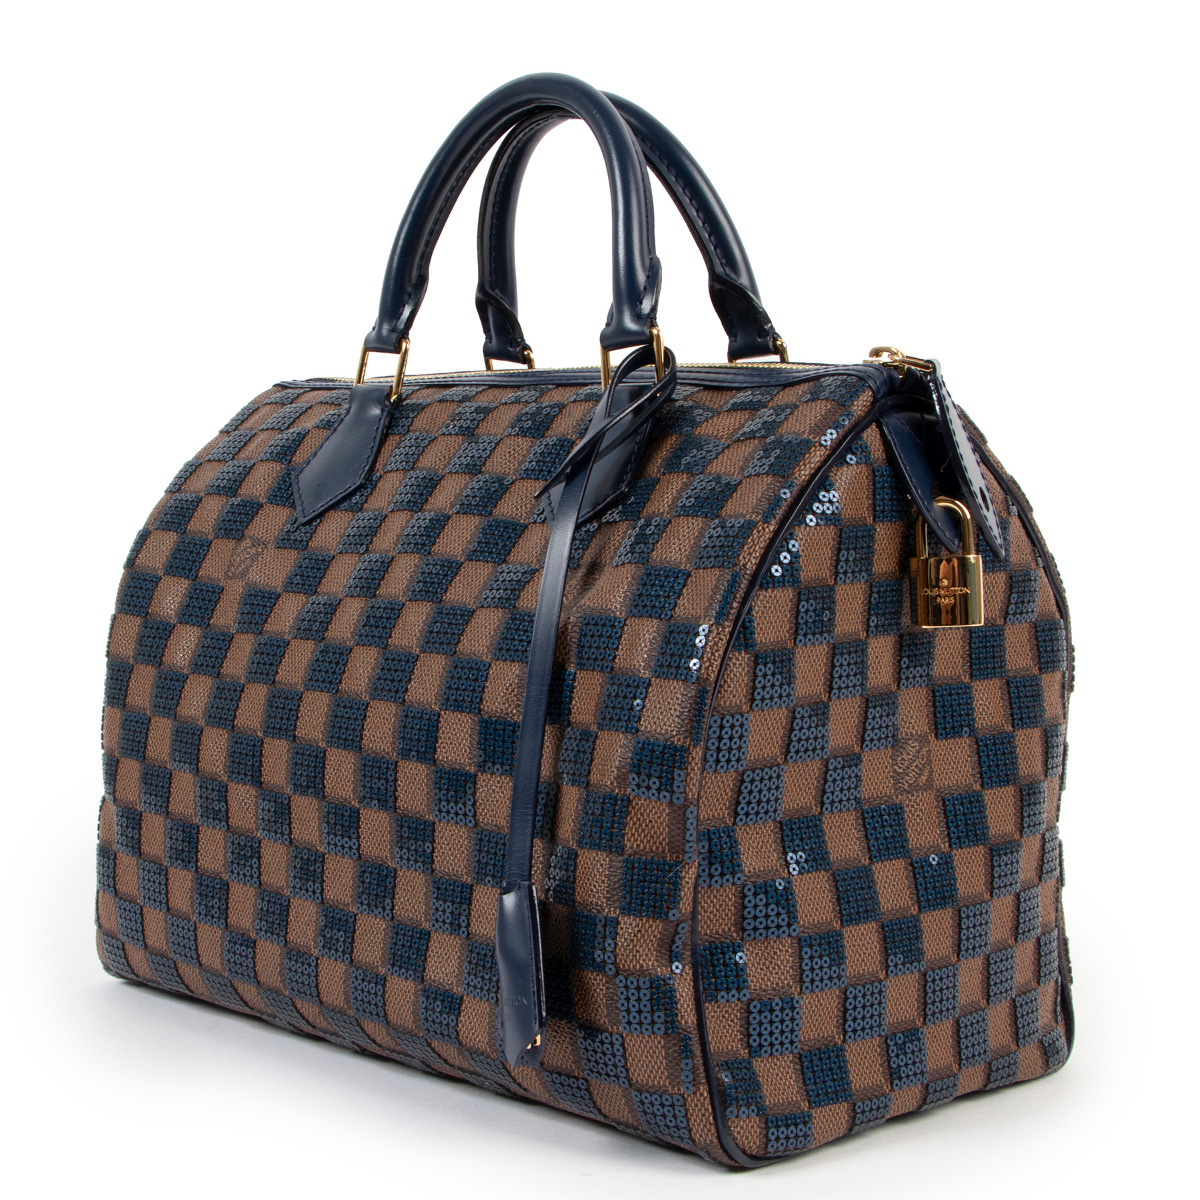 Authenticated used Louis Vuitton Louis Vuitton Handbag Damier Facet 2013 Collection Speedy Cube mm M48905 Beige Ladies, Adult Unisex, Size: (HxWxD)